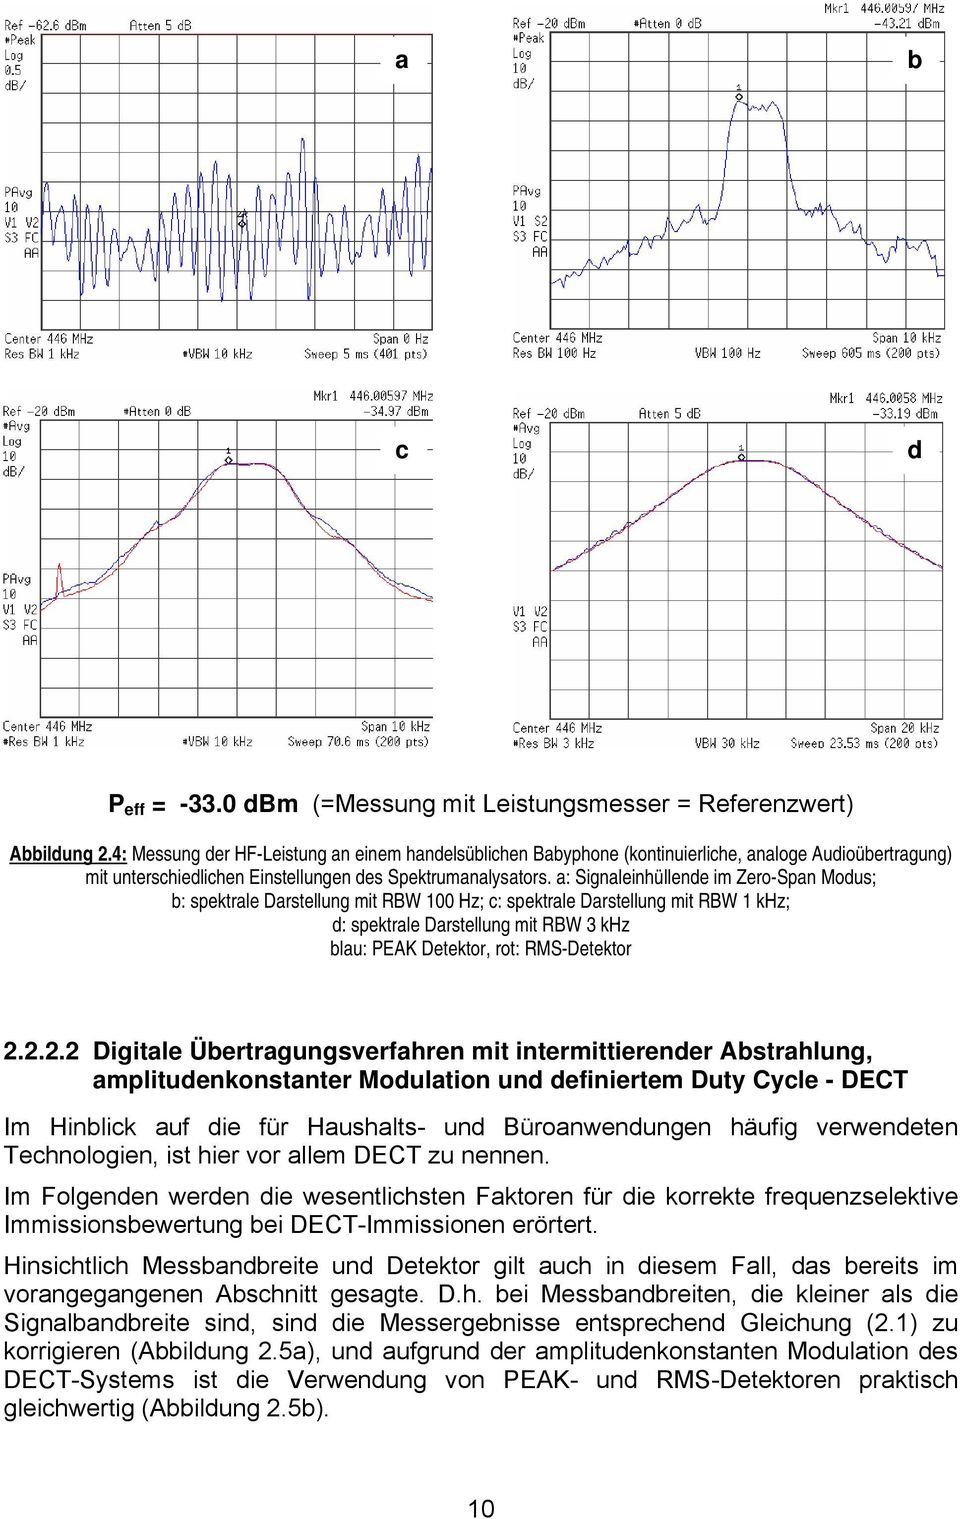 a: Signaleinhüllende im Zero-Span Modus; b: spektrale Darstellung mit RBW 100 Hz; c: spektrale Darstellung mit RBW 1 khz; d: spektrale Darstellung mit RBW 3 khz blau: PEAK Detektor, rot: RMS-Detektor